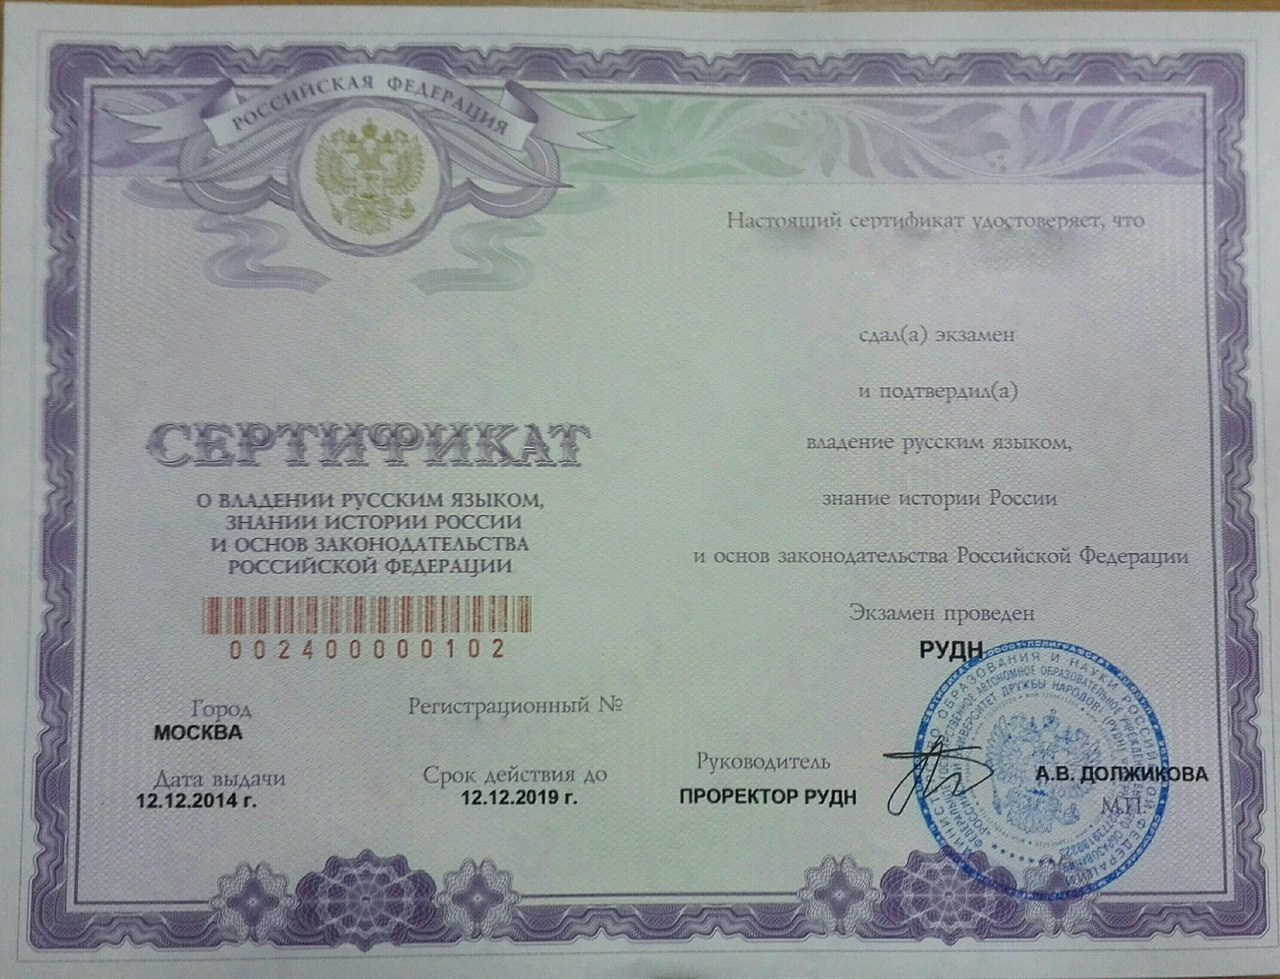 Сертификат об уровне владения русским языком